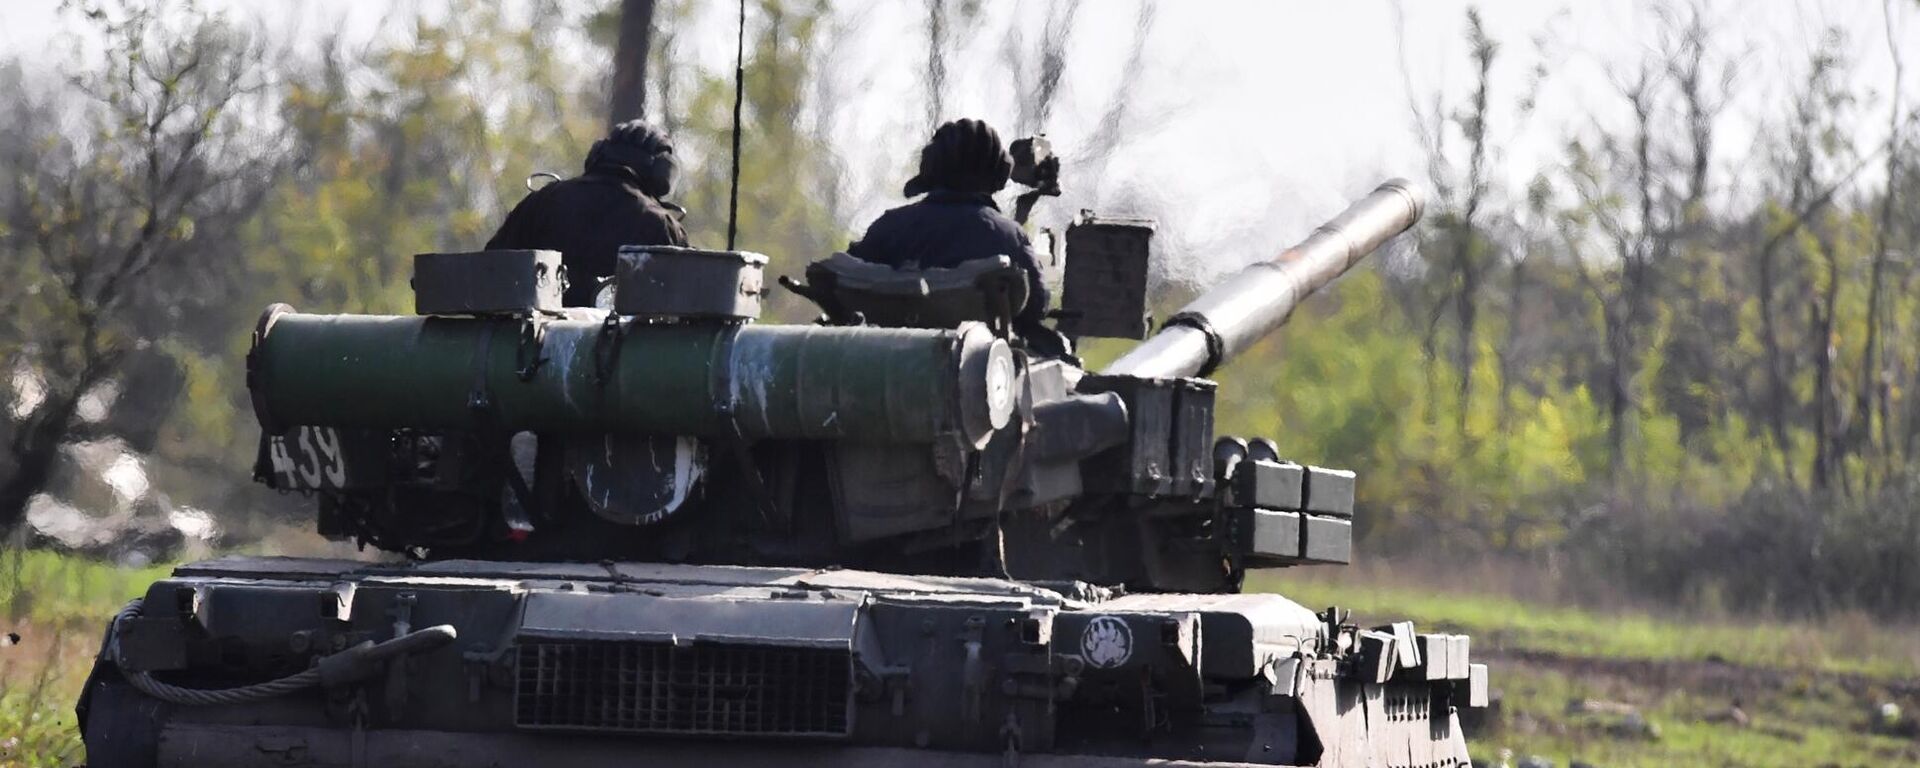 يتم إرسال دبابة تي-80 لإطلاق النار الحي في مواقع القوات المسلحة لأوكرانيا في منطقة دونيتسك - سبوتنيك عربي, 1920, 13.01.2023